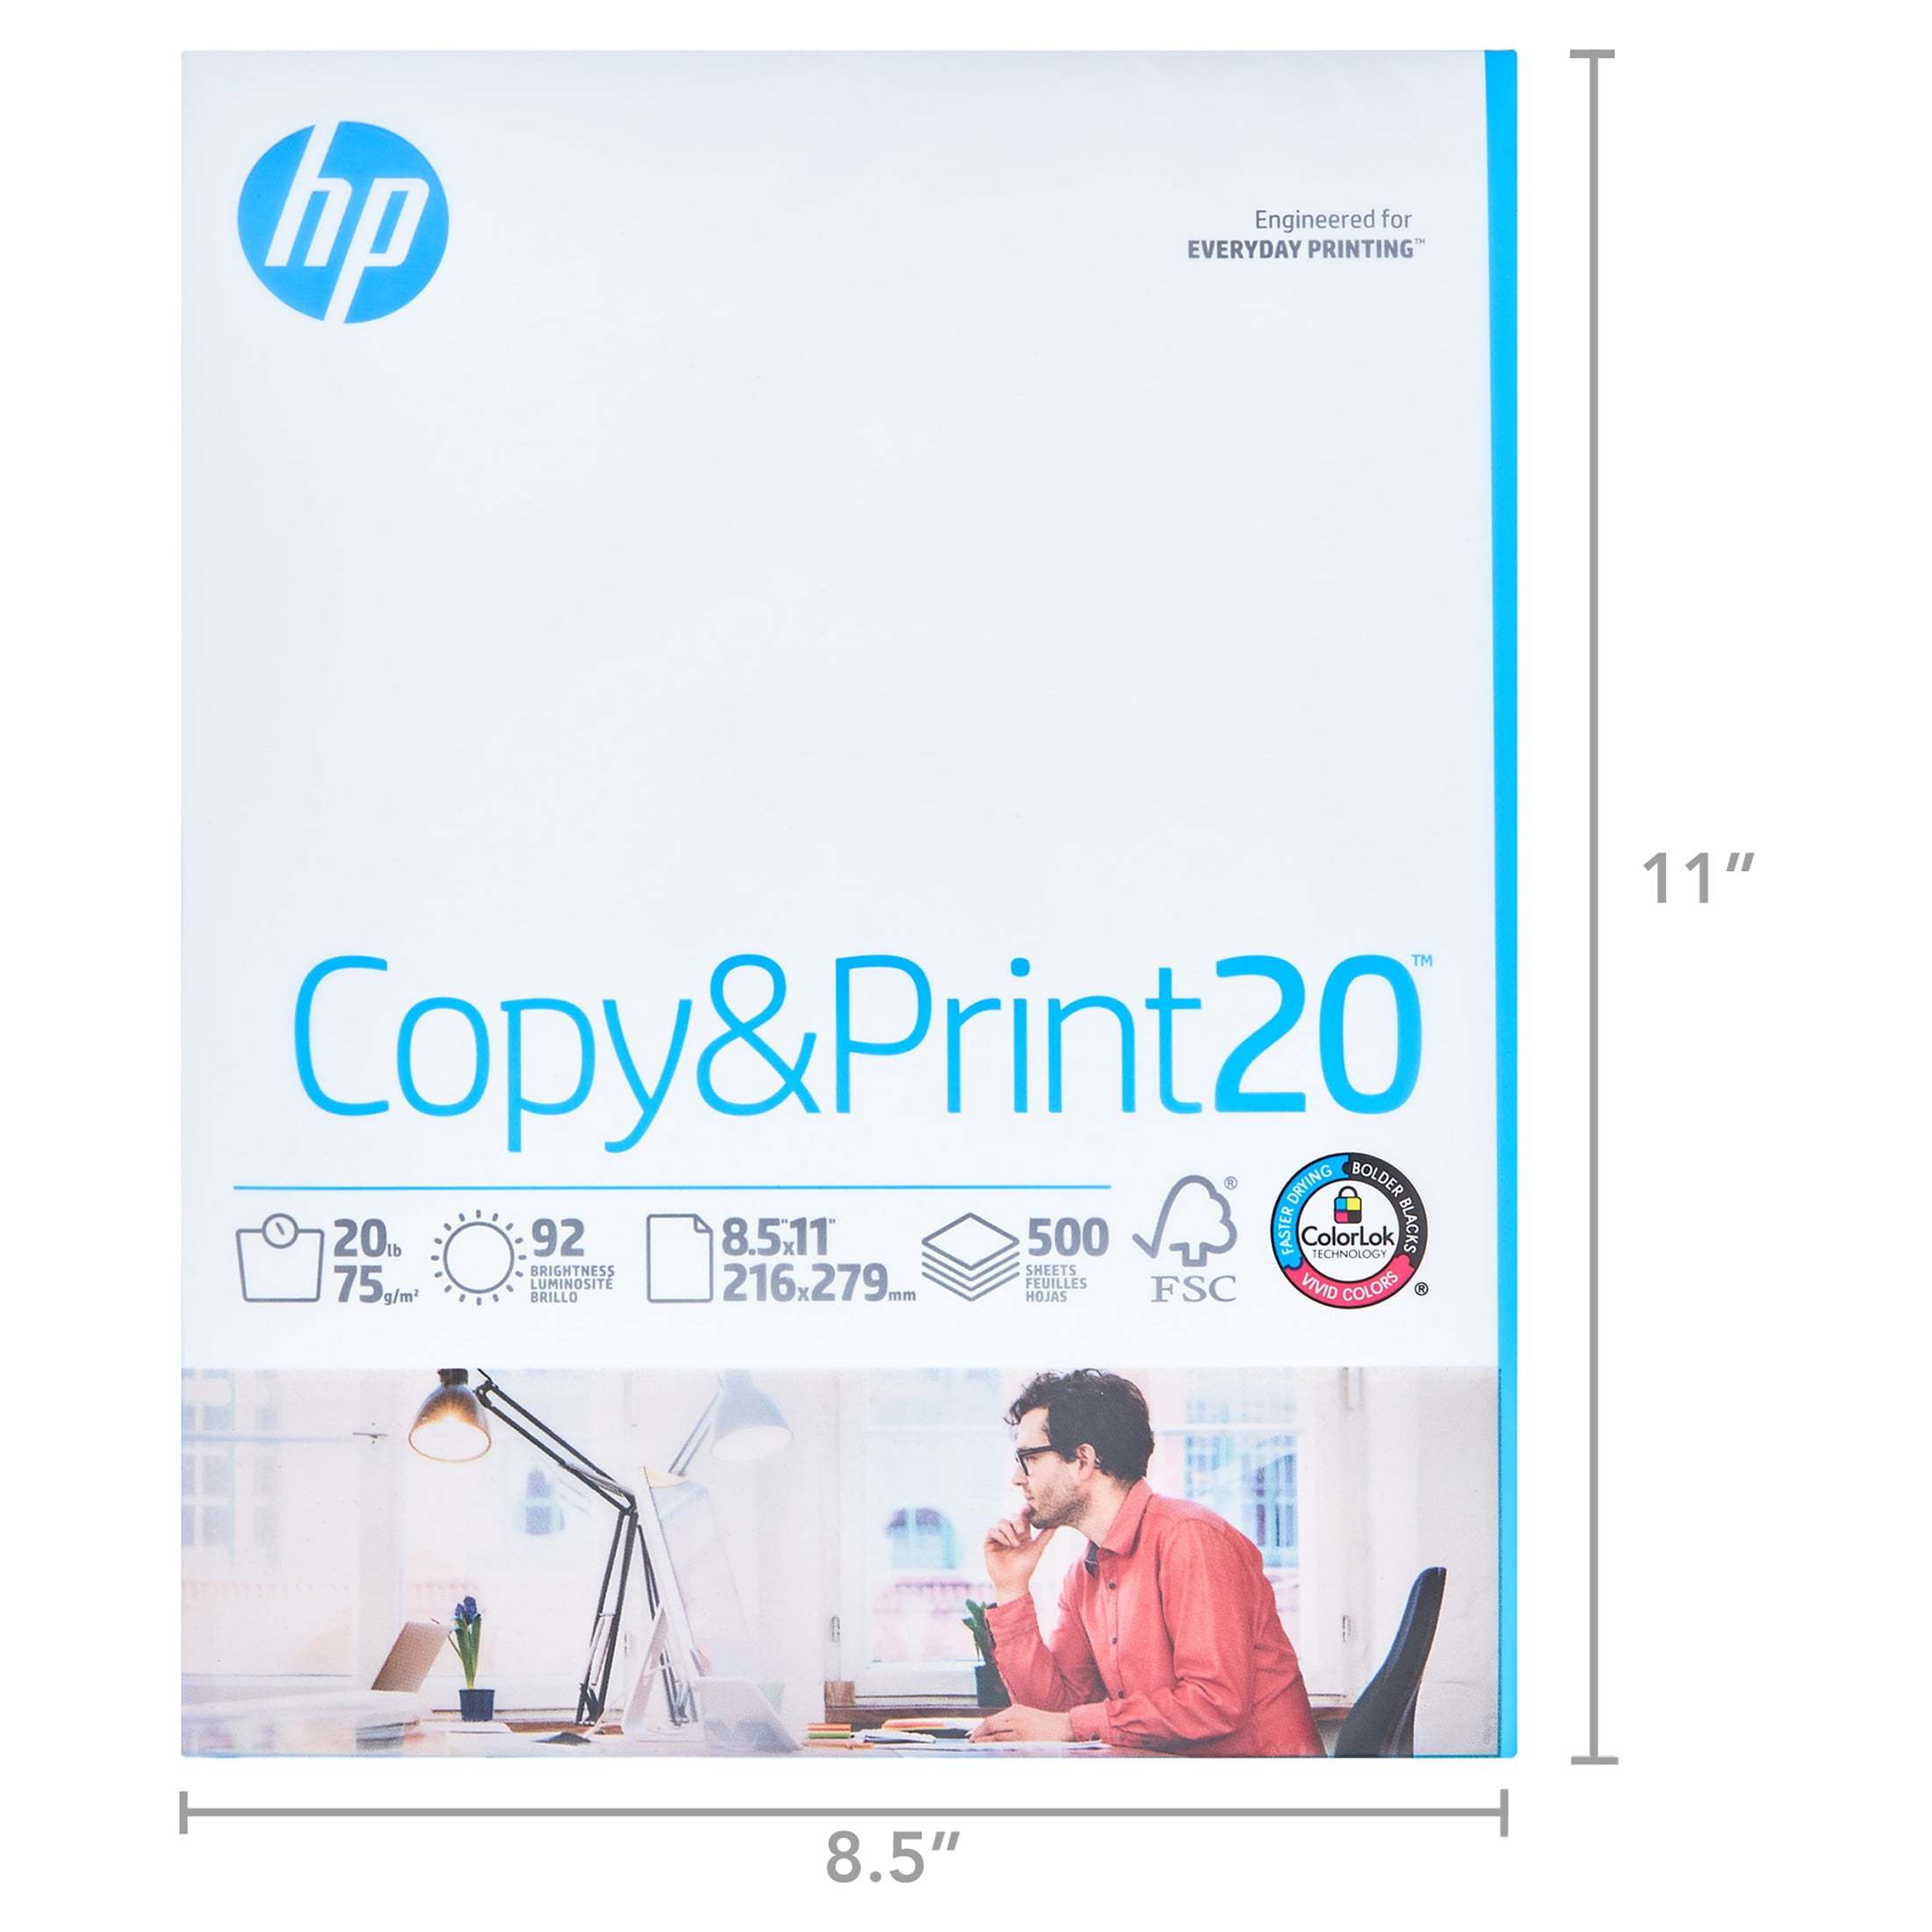 HP Printer Paper, 8.5 x 11 Paper, MultiPurpose 20 lb, 3 Ream Case - 1500  Sheets, 96 Bright, Made in USA - FSC Certified Copy Paper